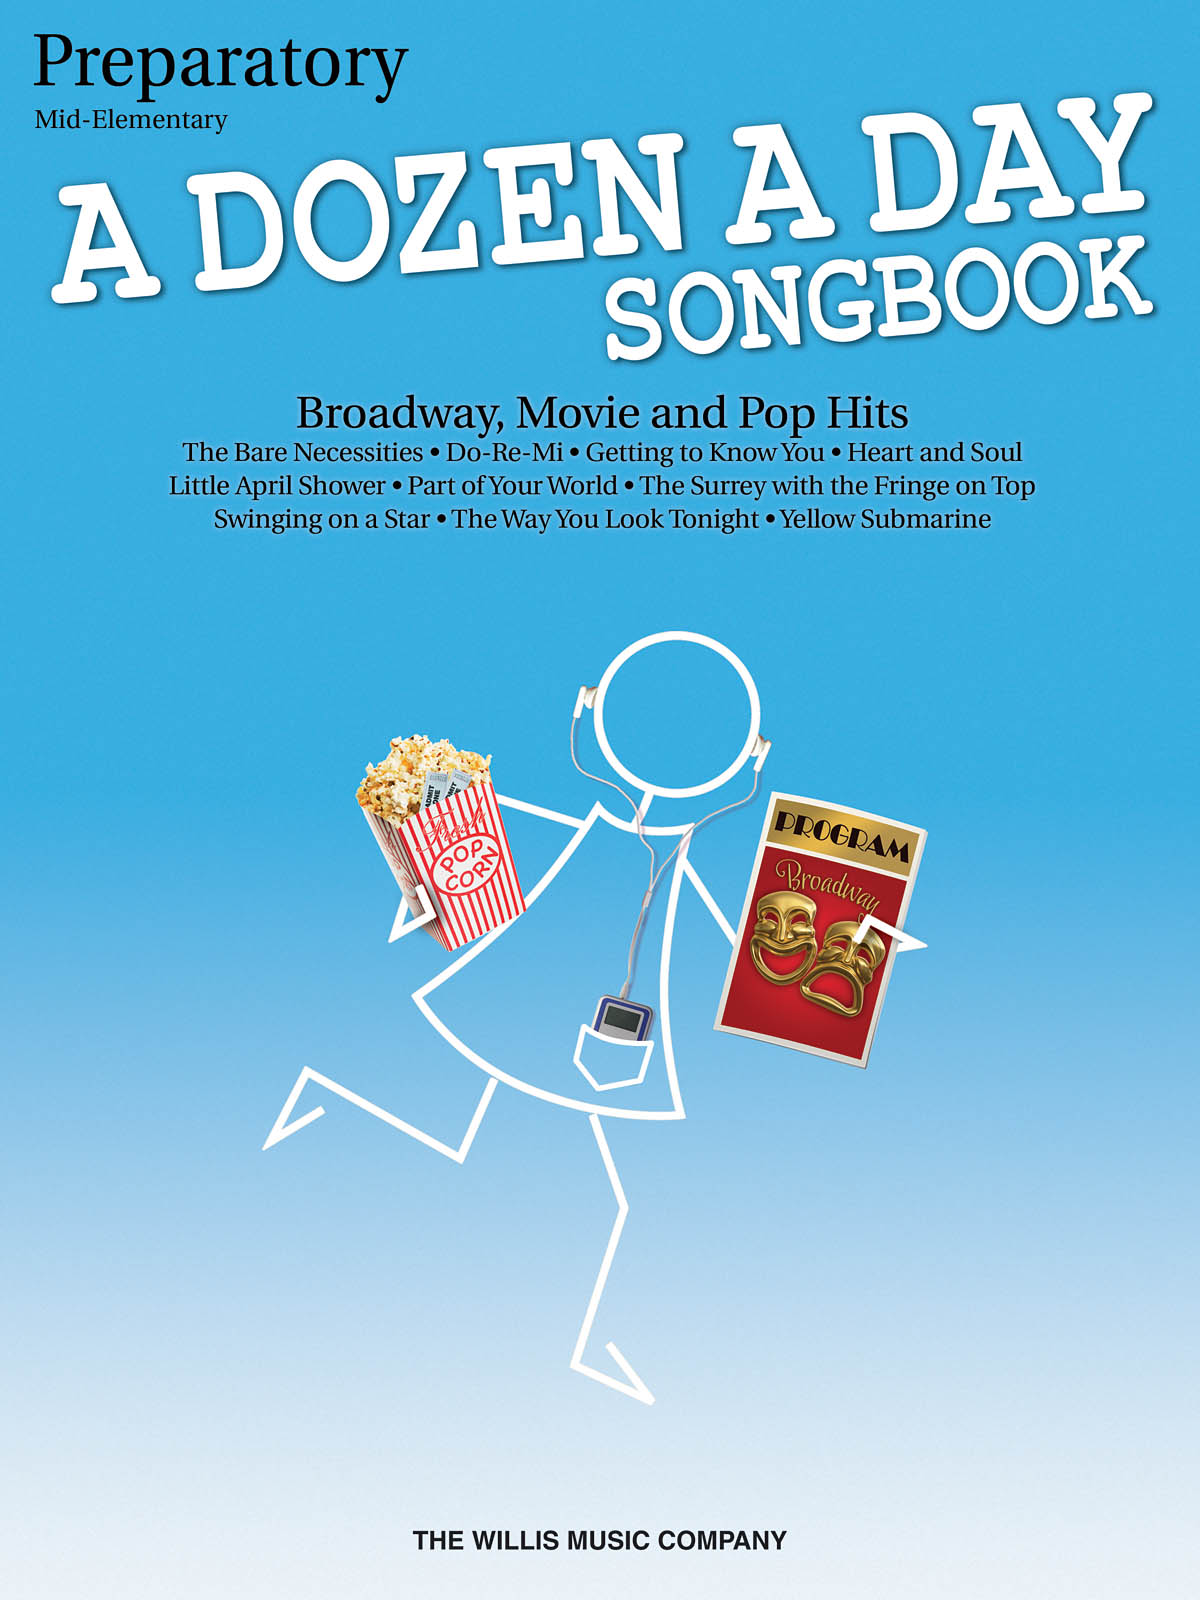 A Dozen A Day Songbook - Preparatory Book - Mid-Elementary Level - známé skladby na klavír